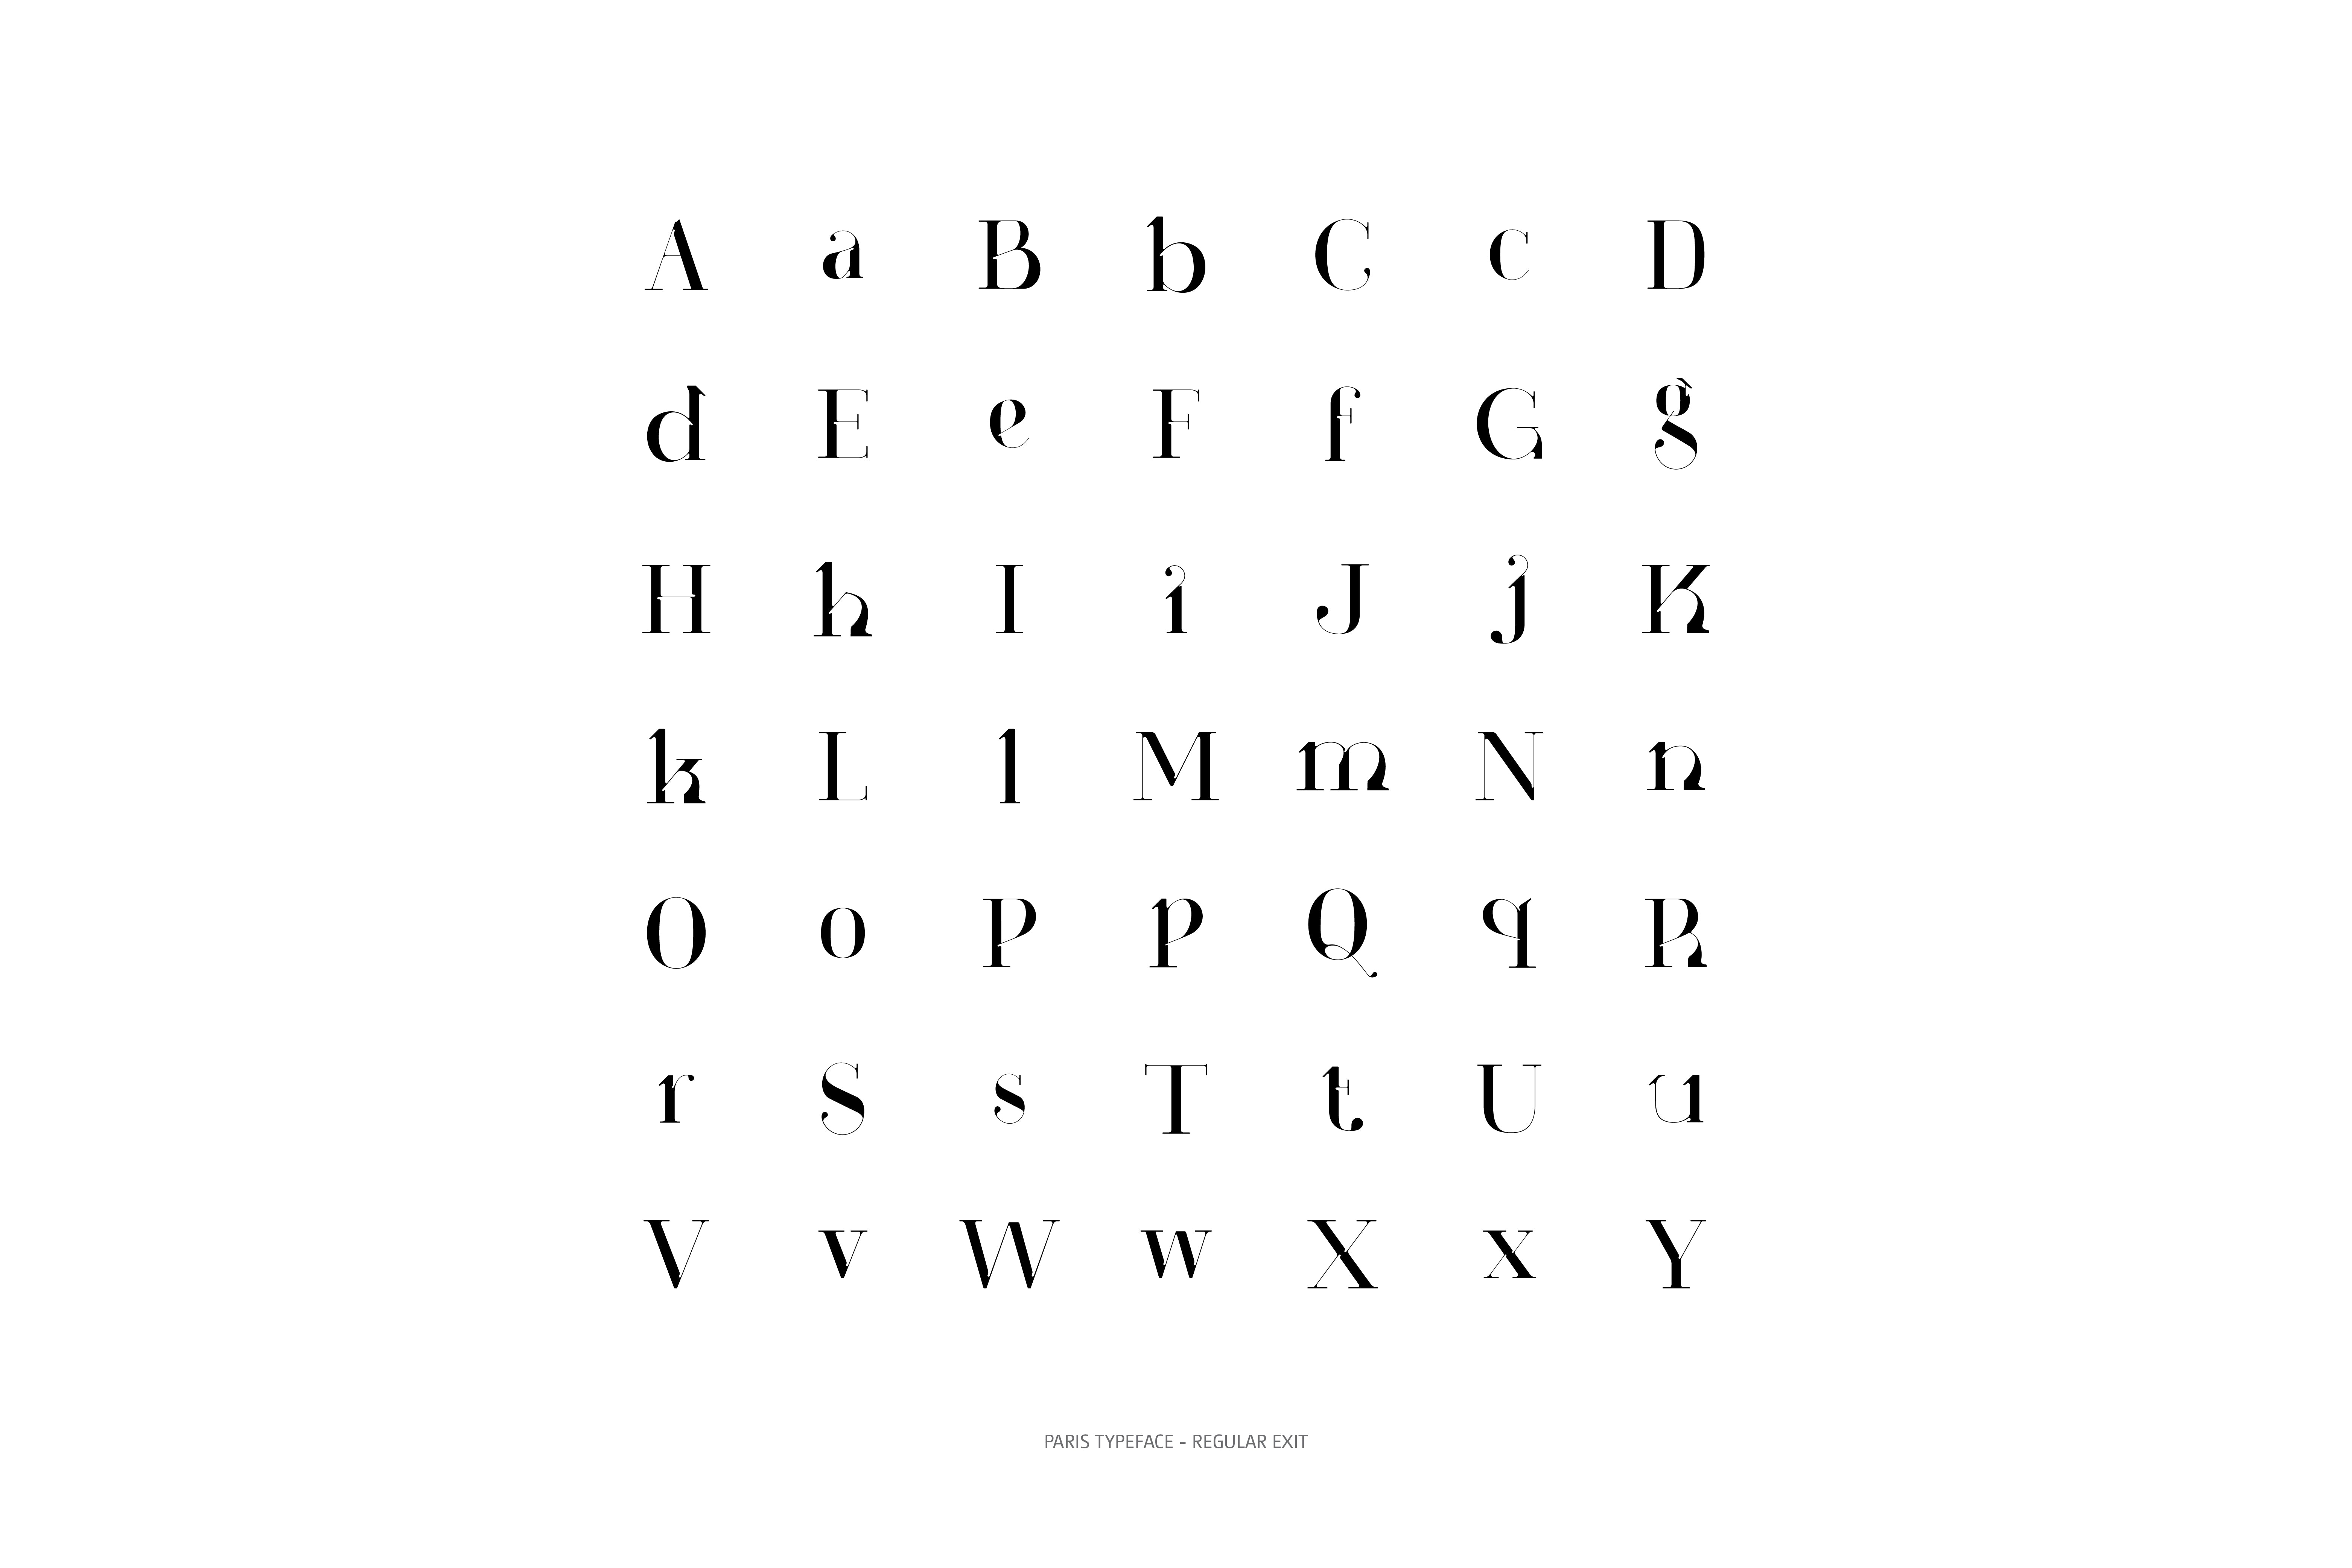 Paris Typeface Regular Exit glyphs collection